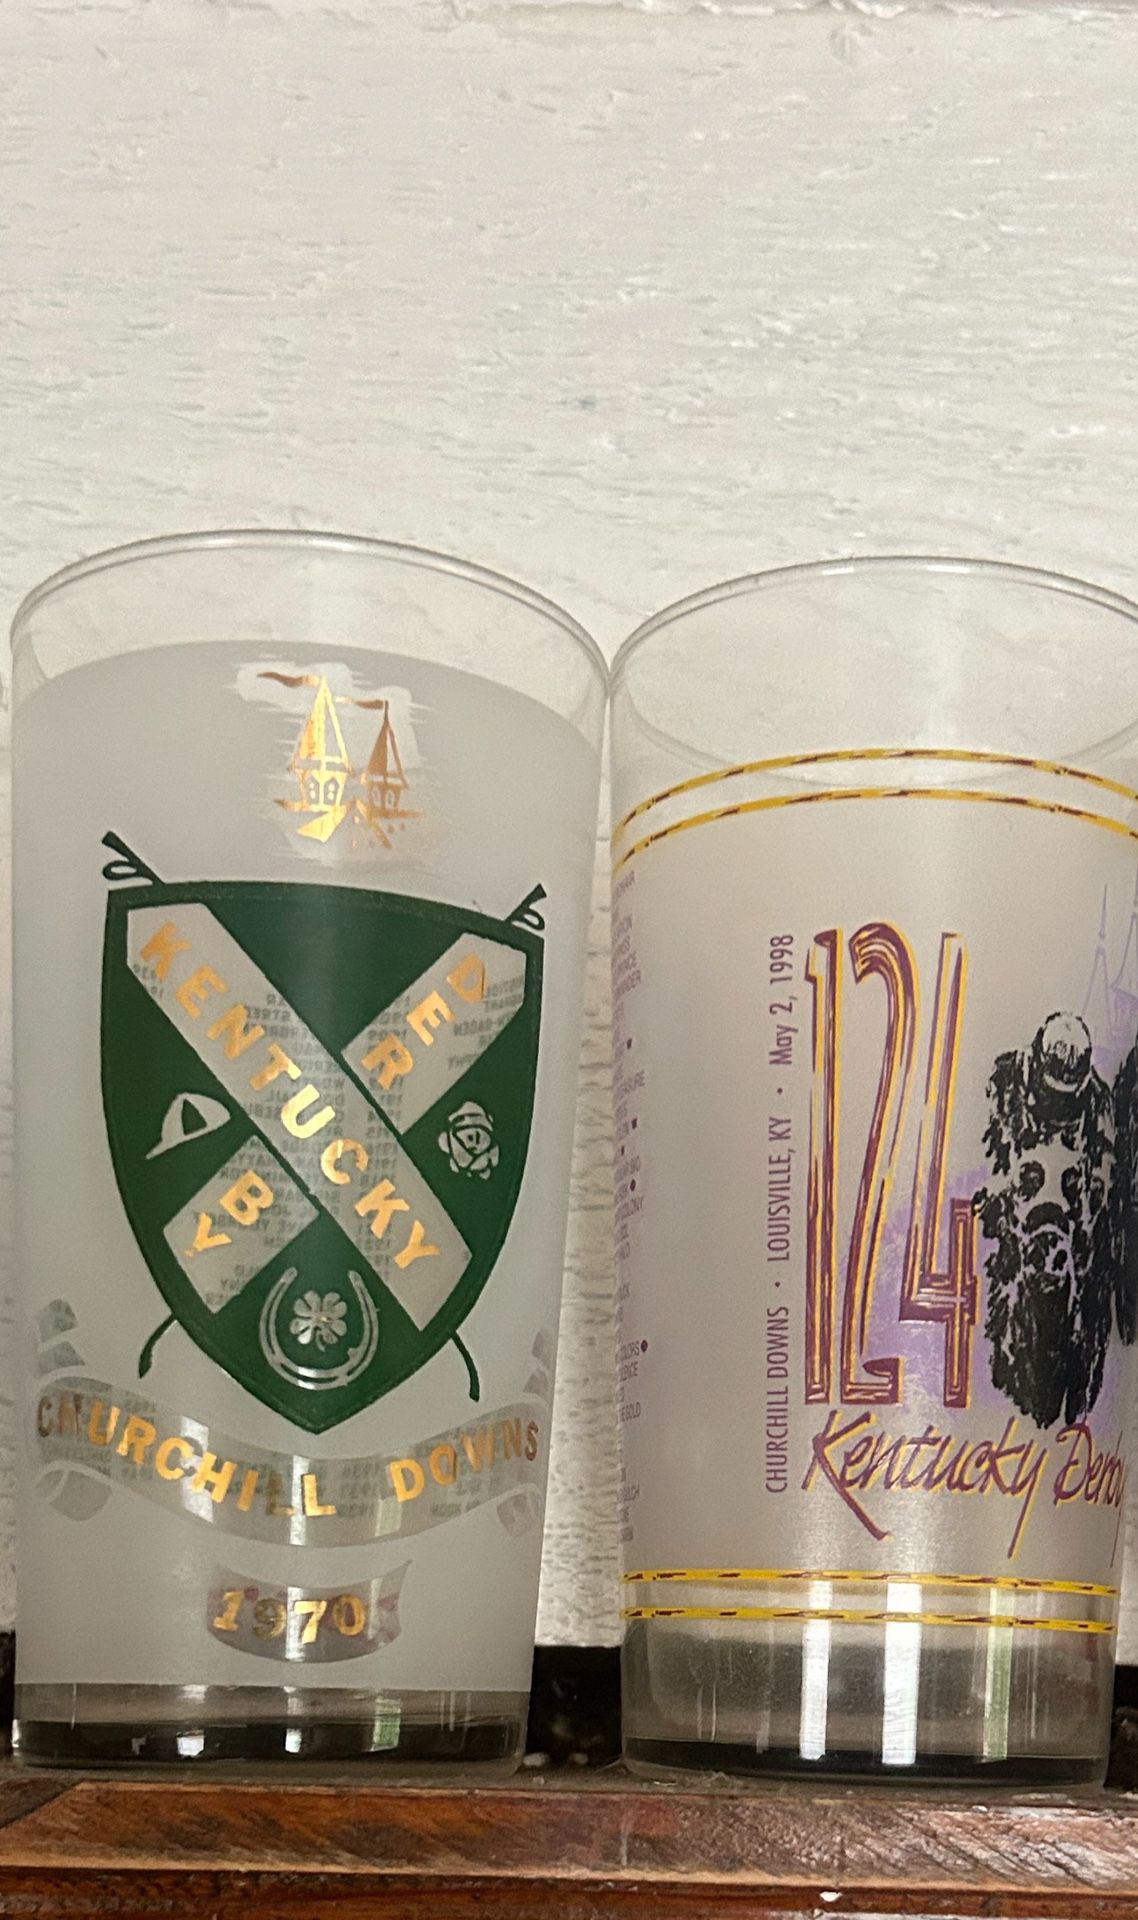 Mint Jubilee Kentucky Derby Collectible Glass Wear